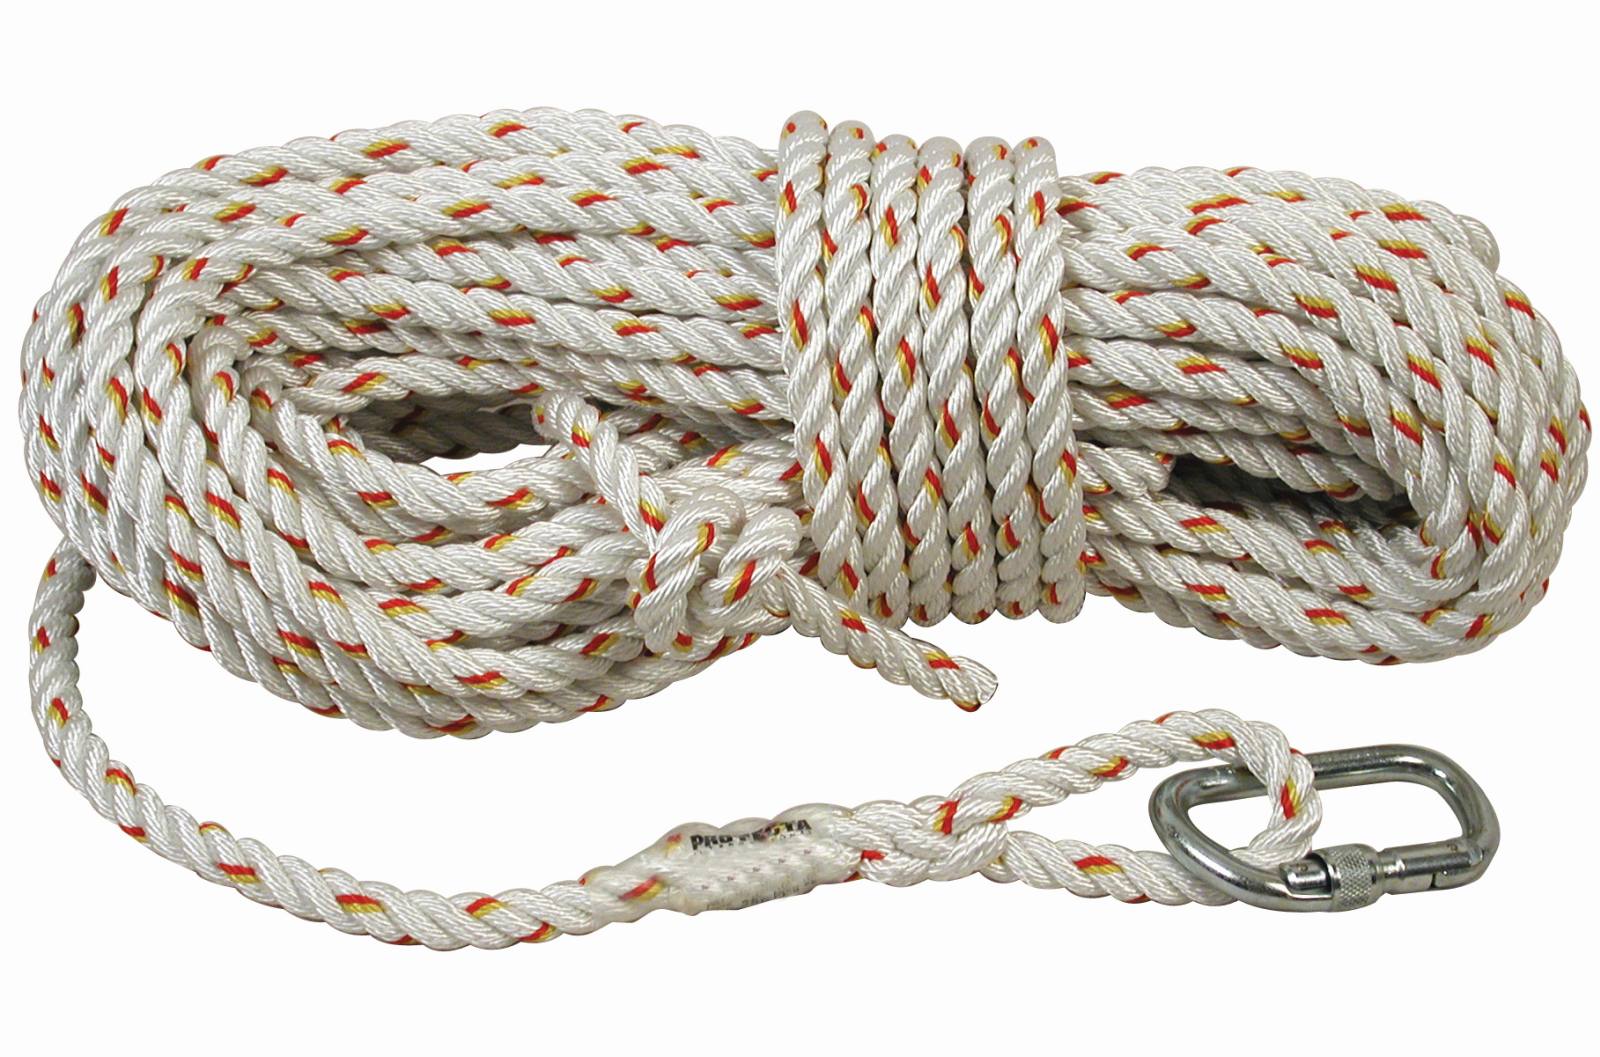 3M PROTECTA Seil für mitlaufendes Auffanggerät Cobra, Länge: 15 m, gedrehtes Seil 14 mm , AJ501 Karabiner Öffnungsweite 17 mm, 15,0 m